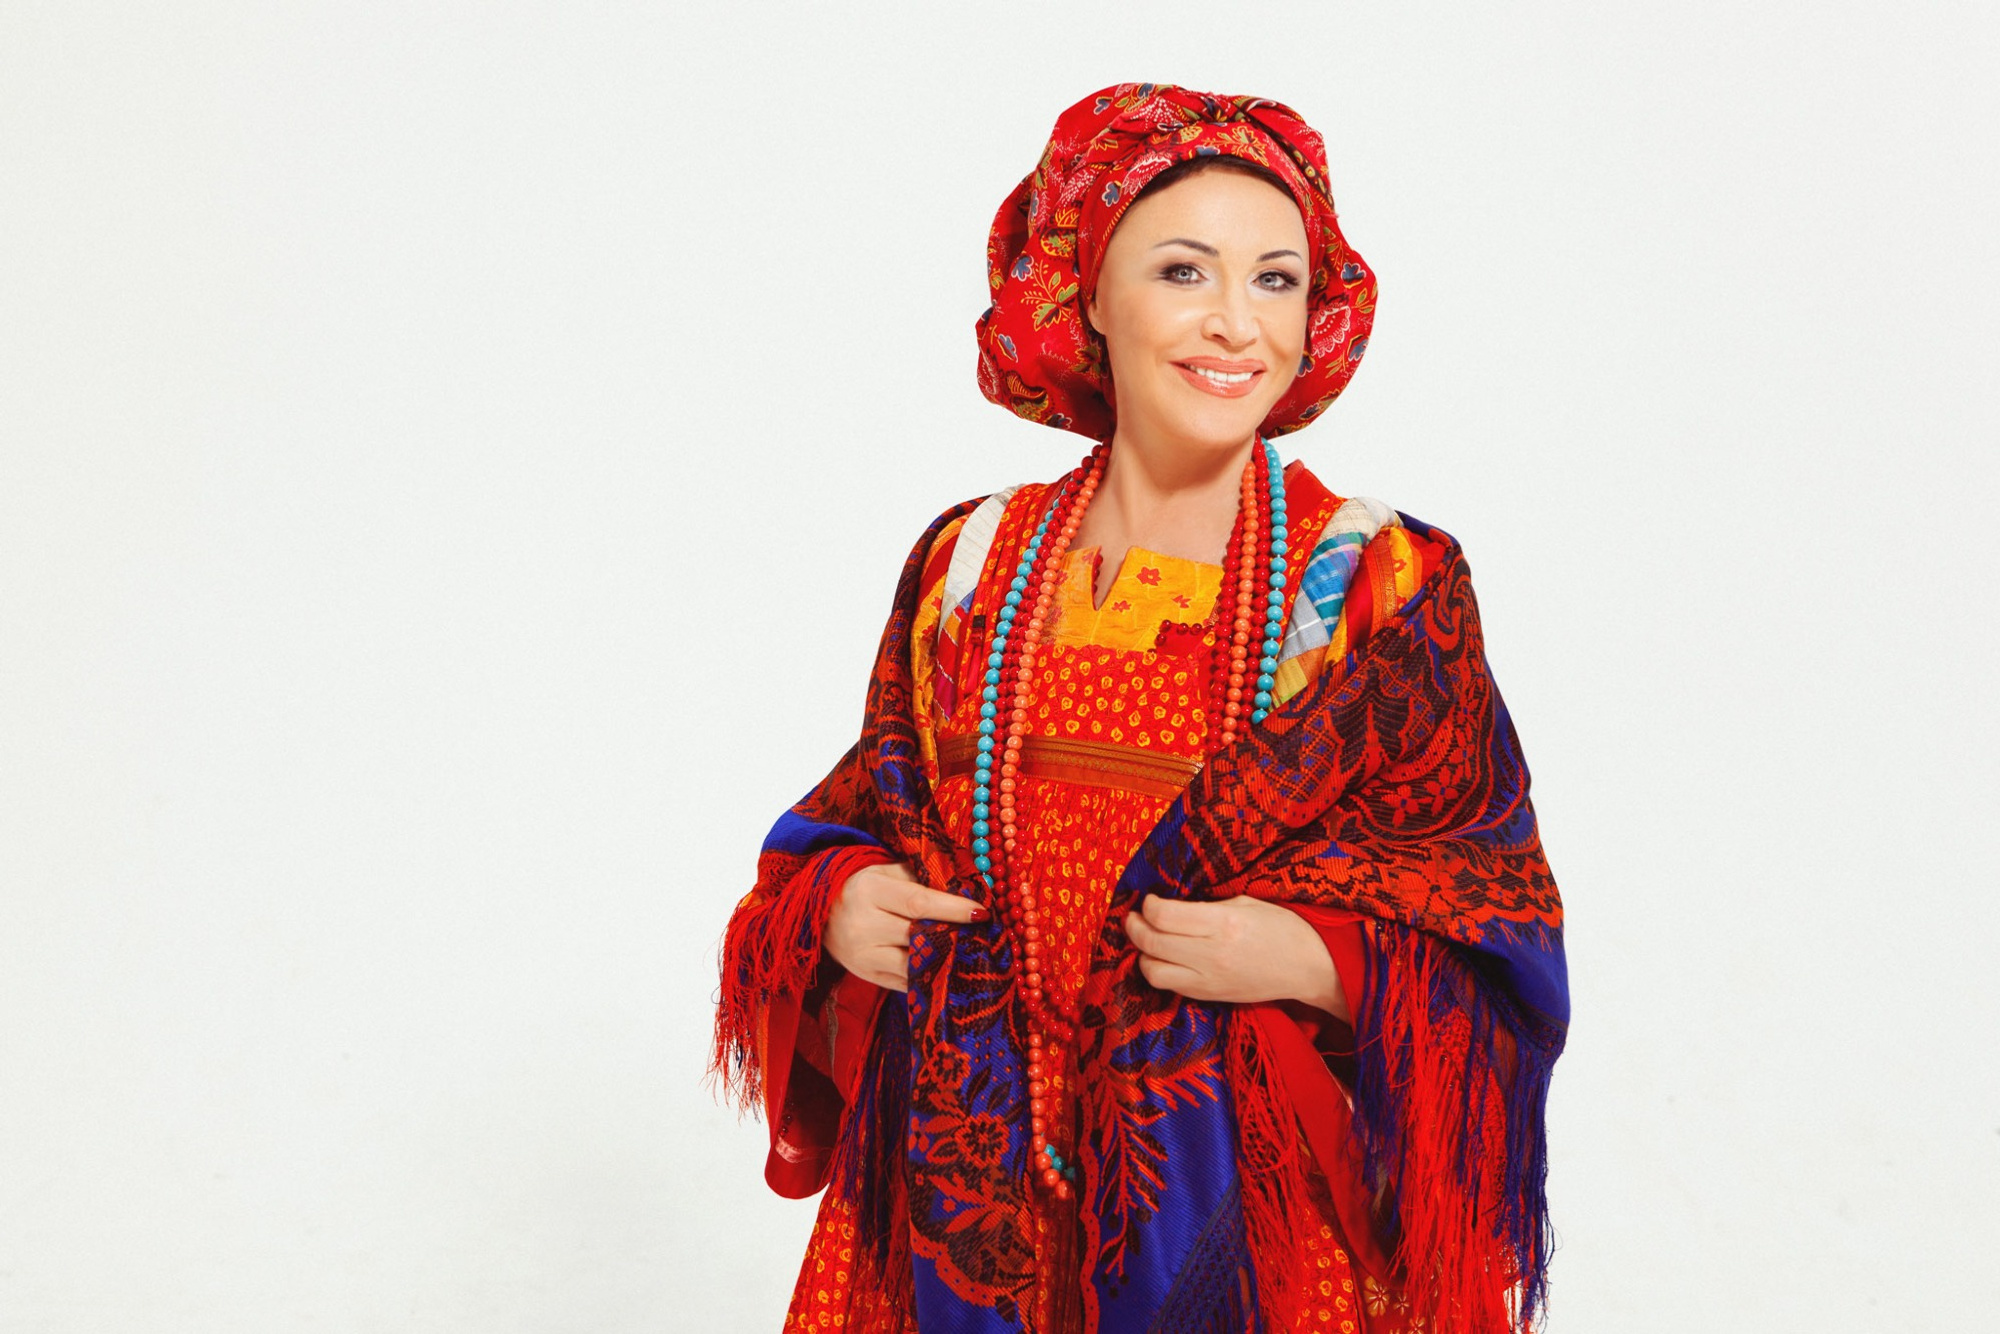 Концерт Надежды Бабкиной в Омске не отменят, за выступление артистка получит 1 млн руб.